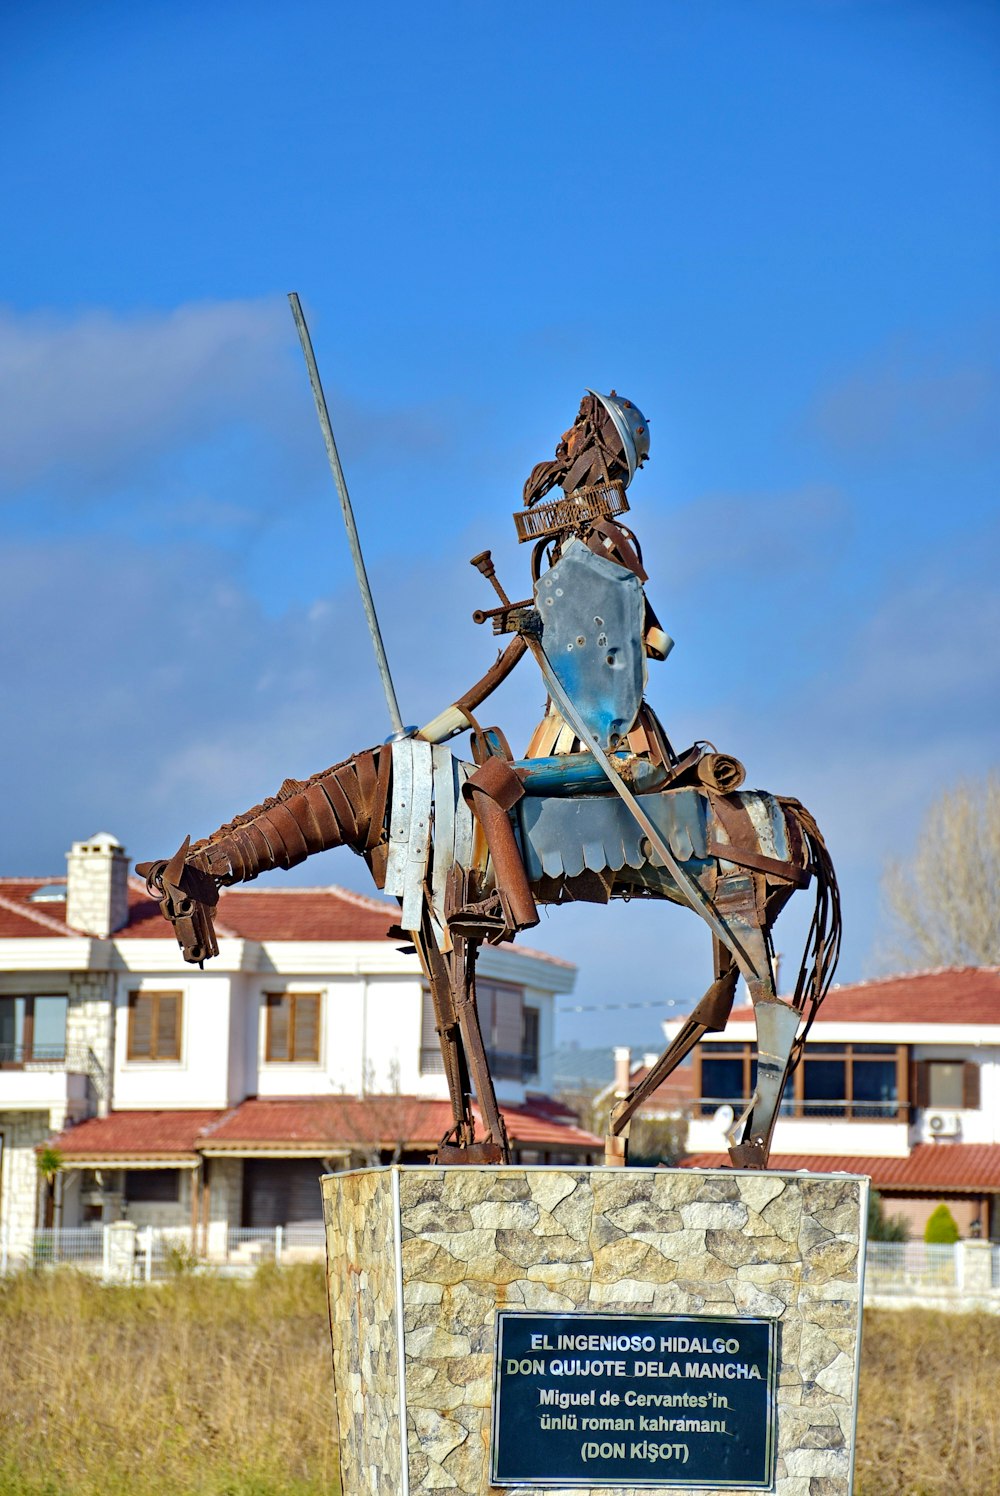 Eine Statue eines Mannes auf einem Pferd mit einem Schwert